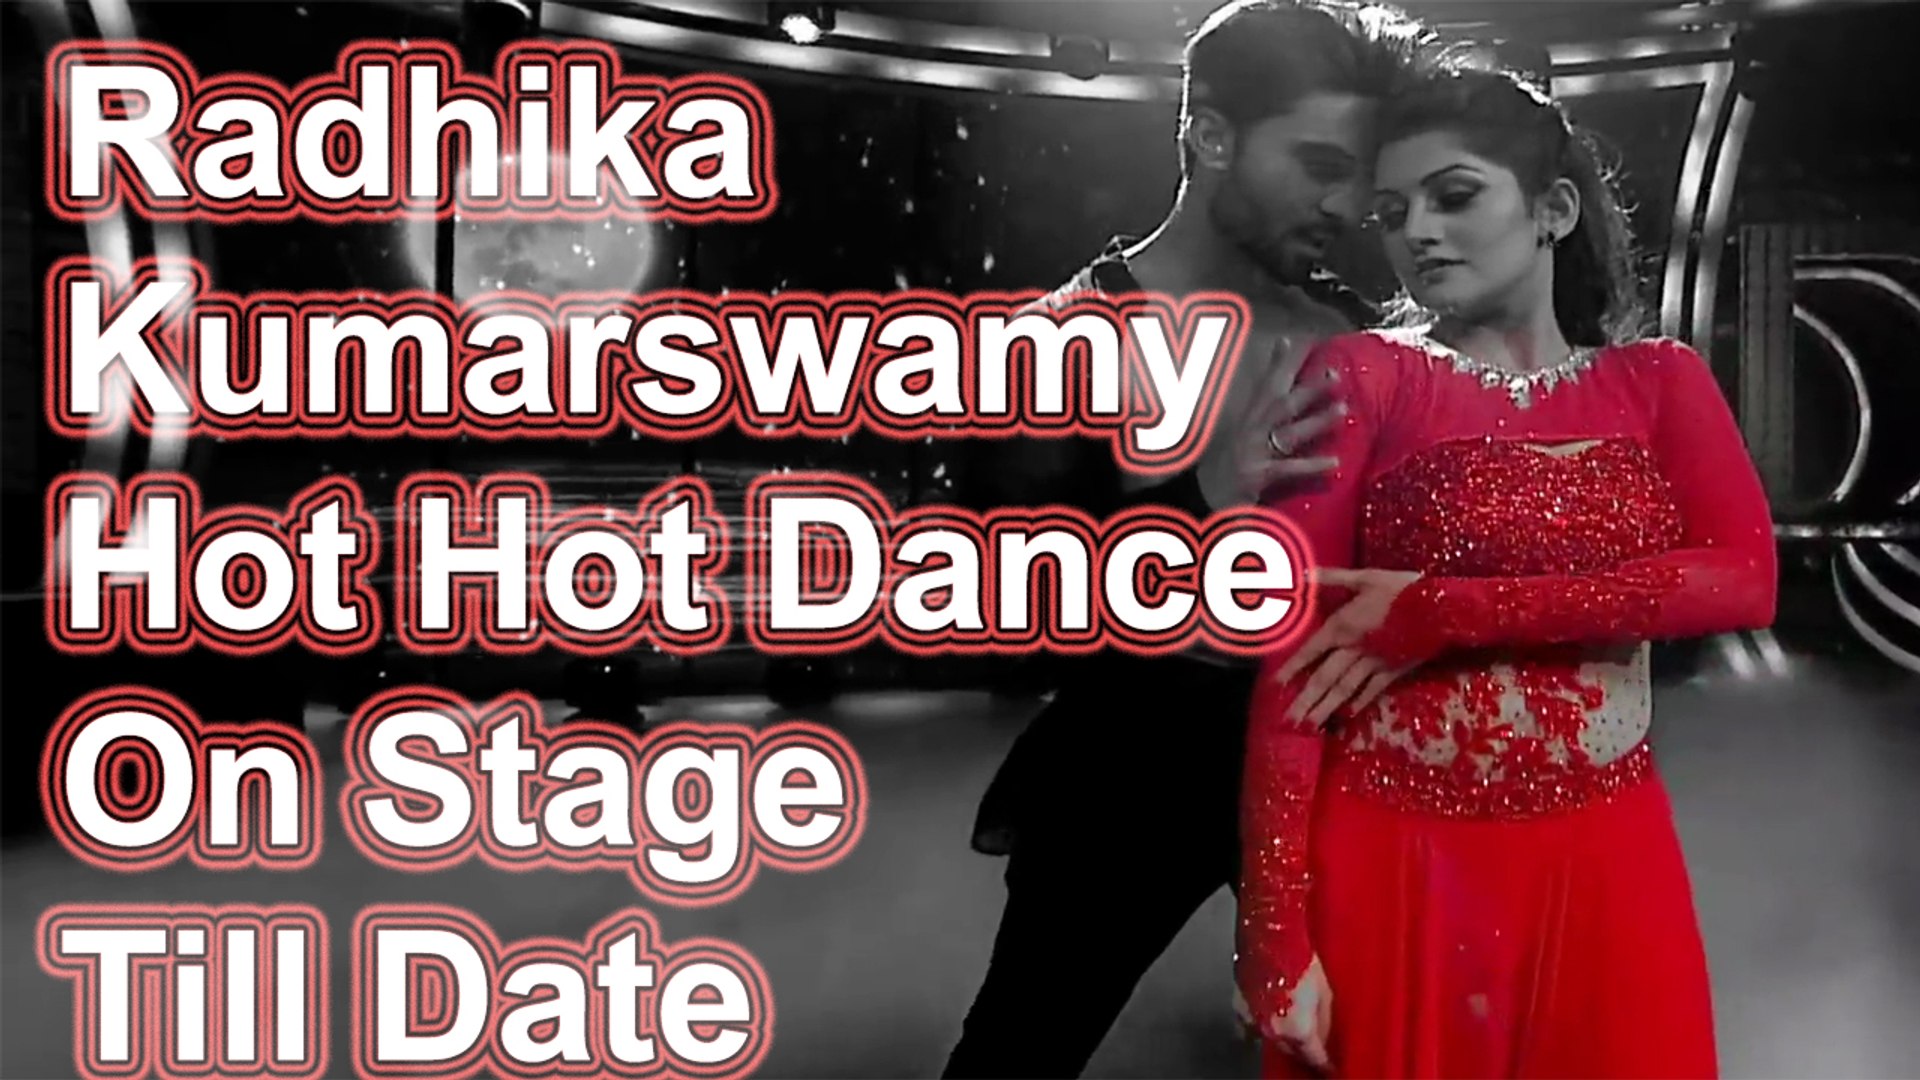 Radhika Kumarswamy Xxx - Radhika Kumarswamy Hot Hot Dance On Stage Till Date - video ...